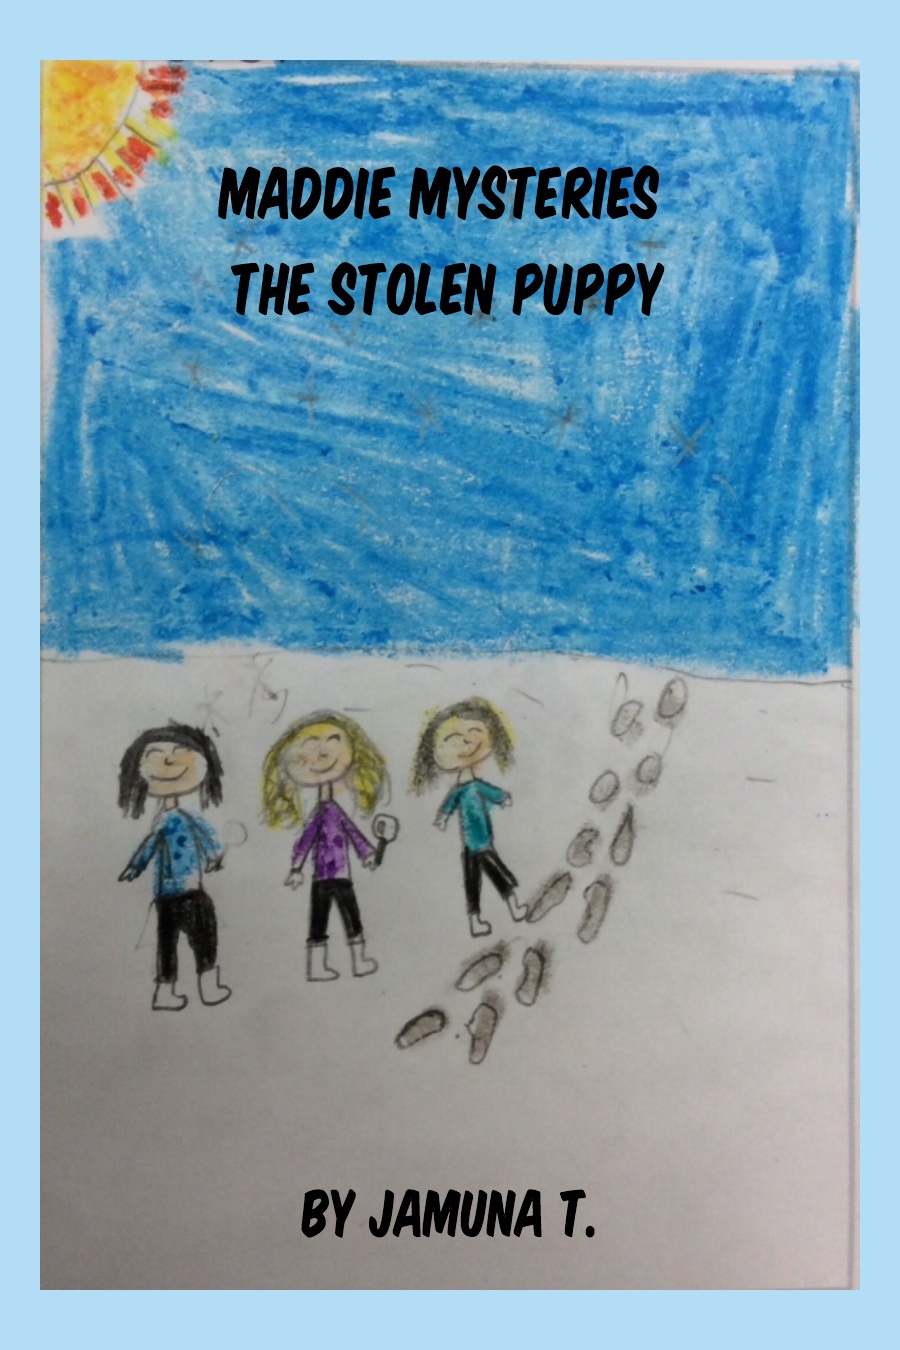 The Stolen Puppy by Jamuna T